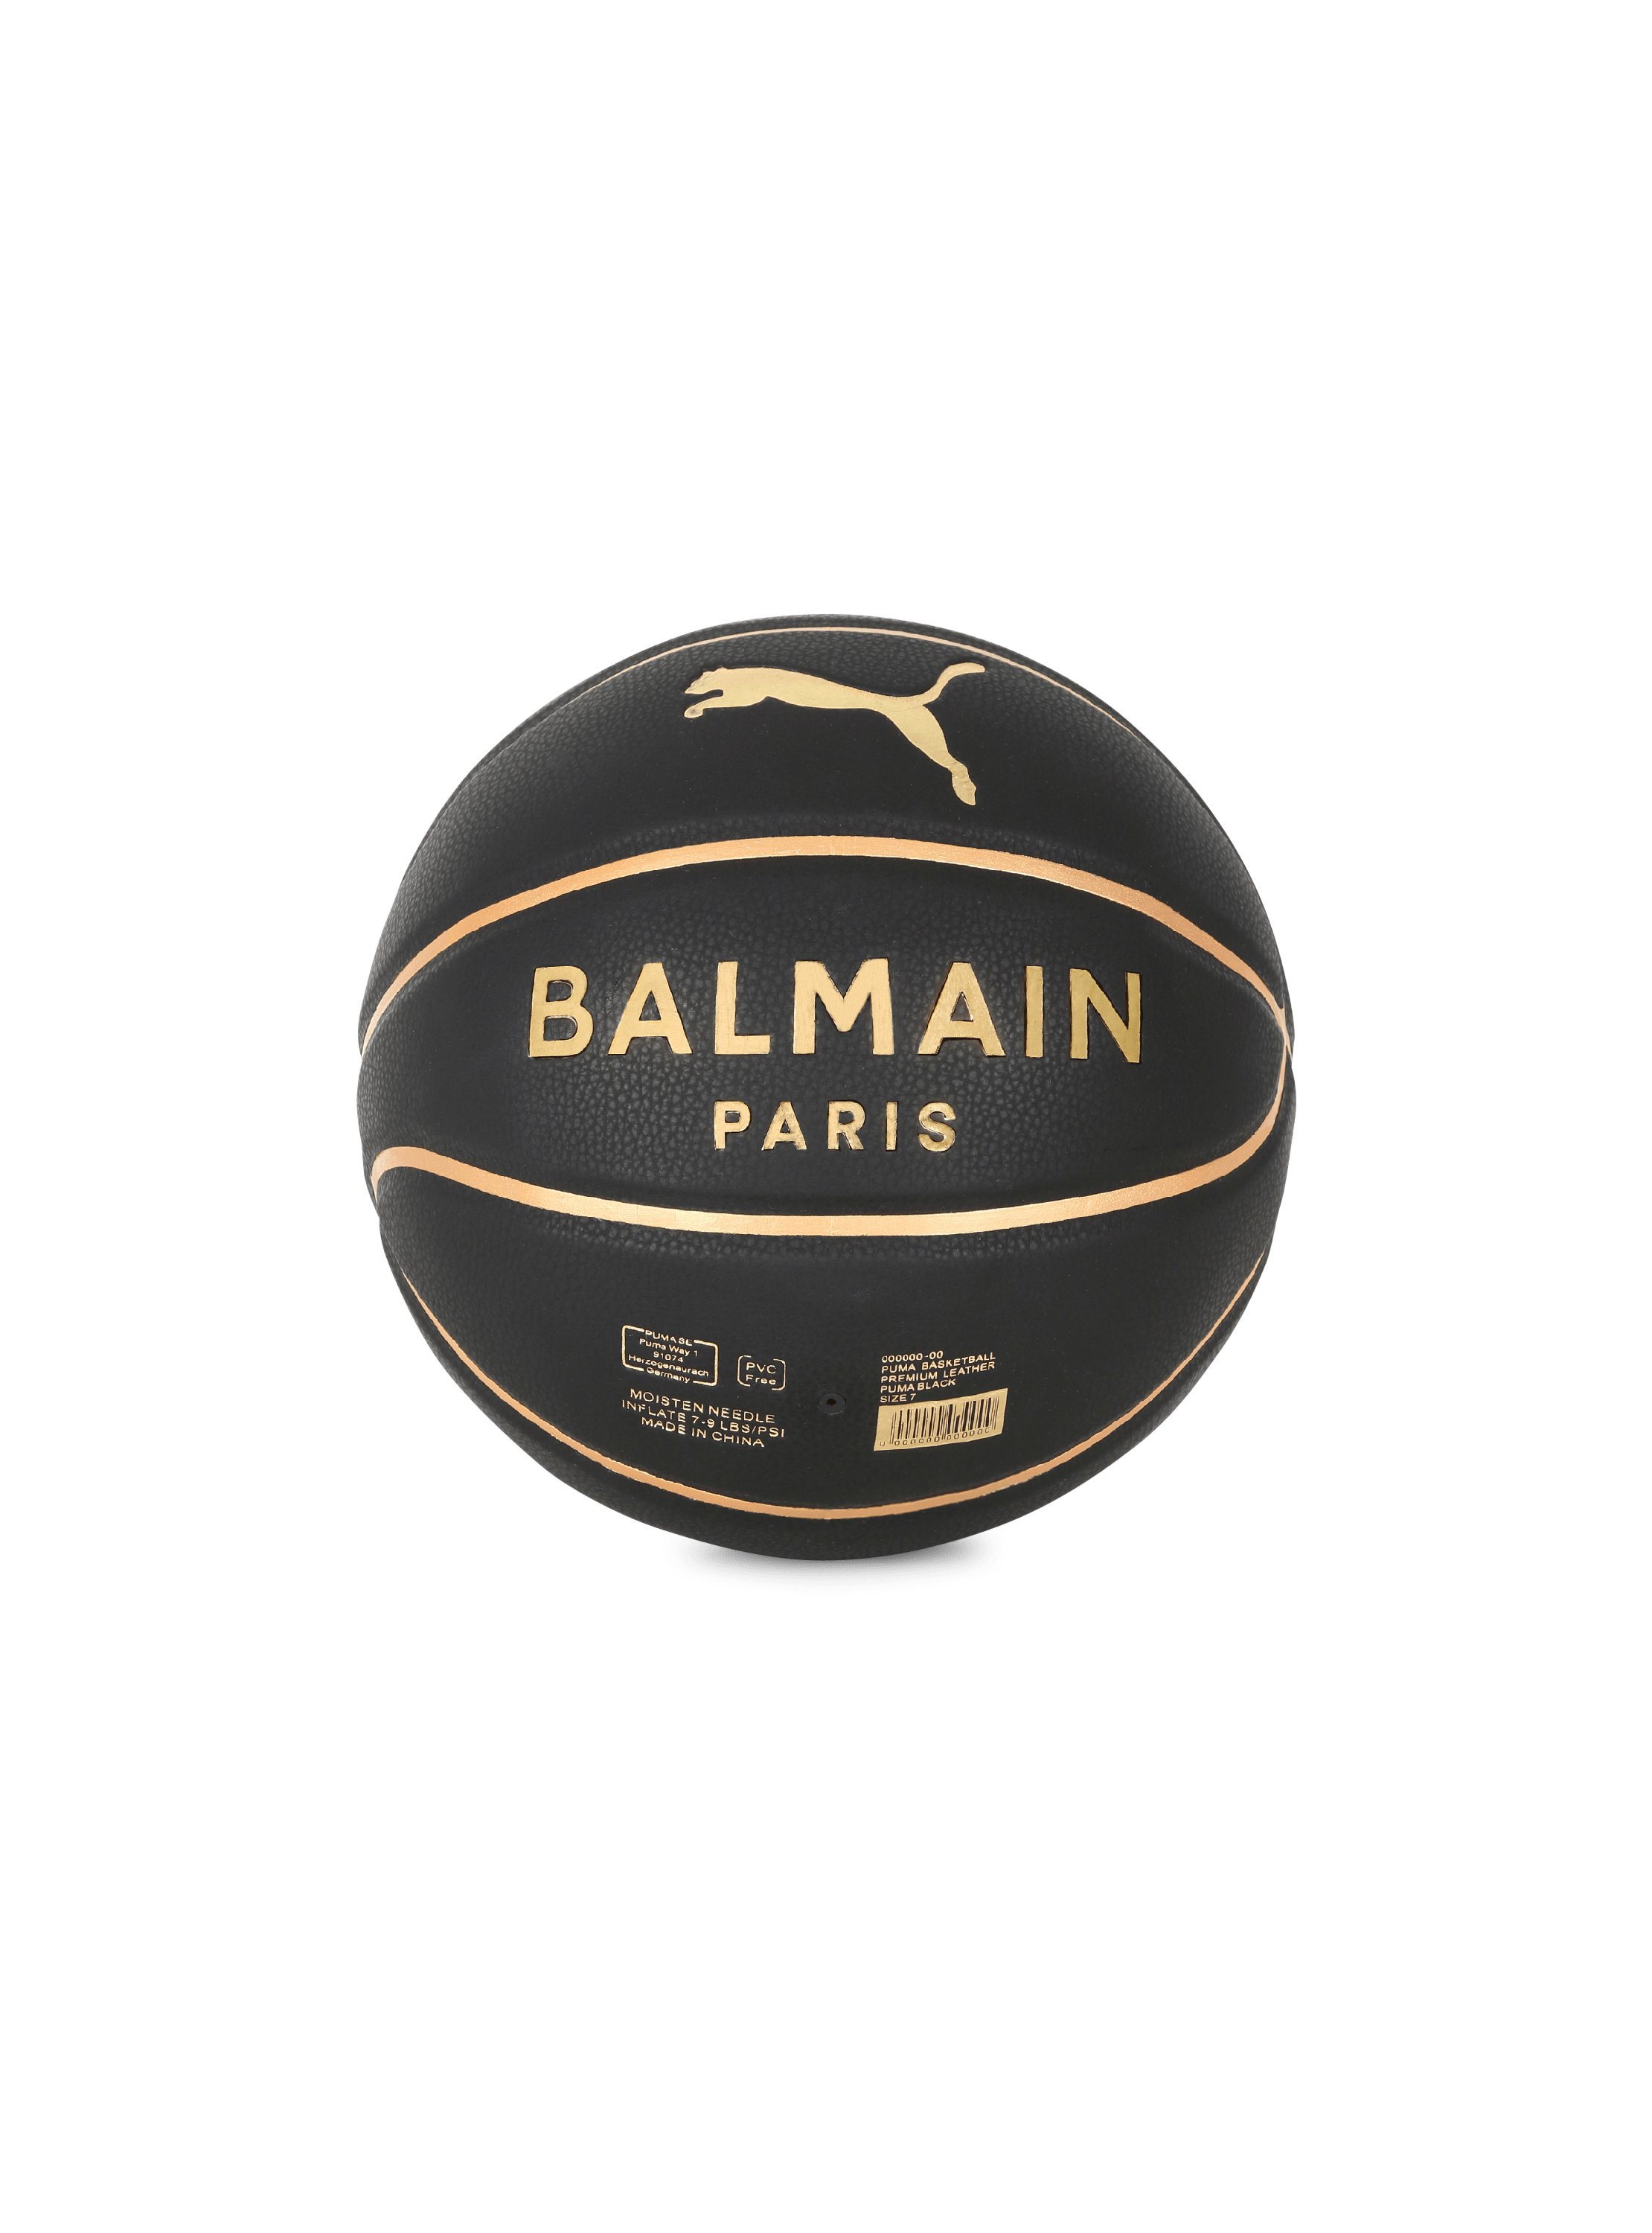 En exclusiva - Balmain x Puma - Pelota de baloncesto